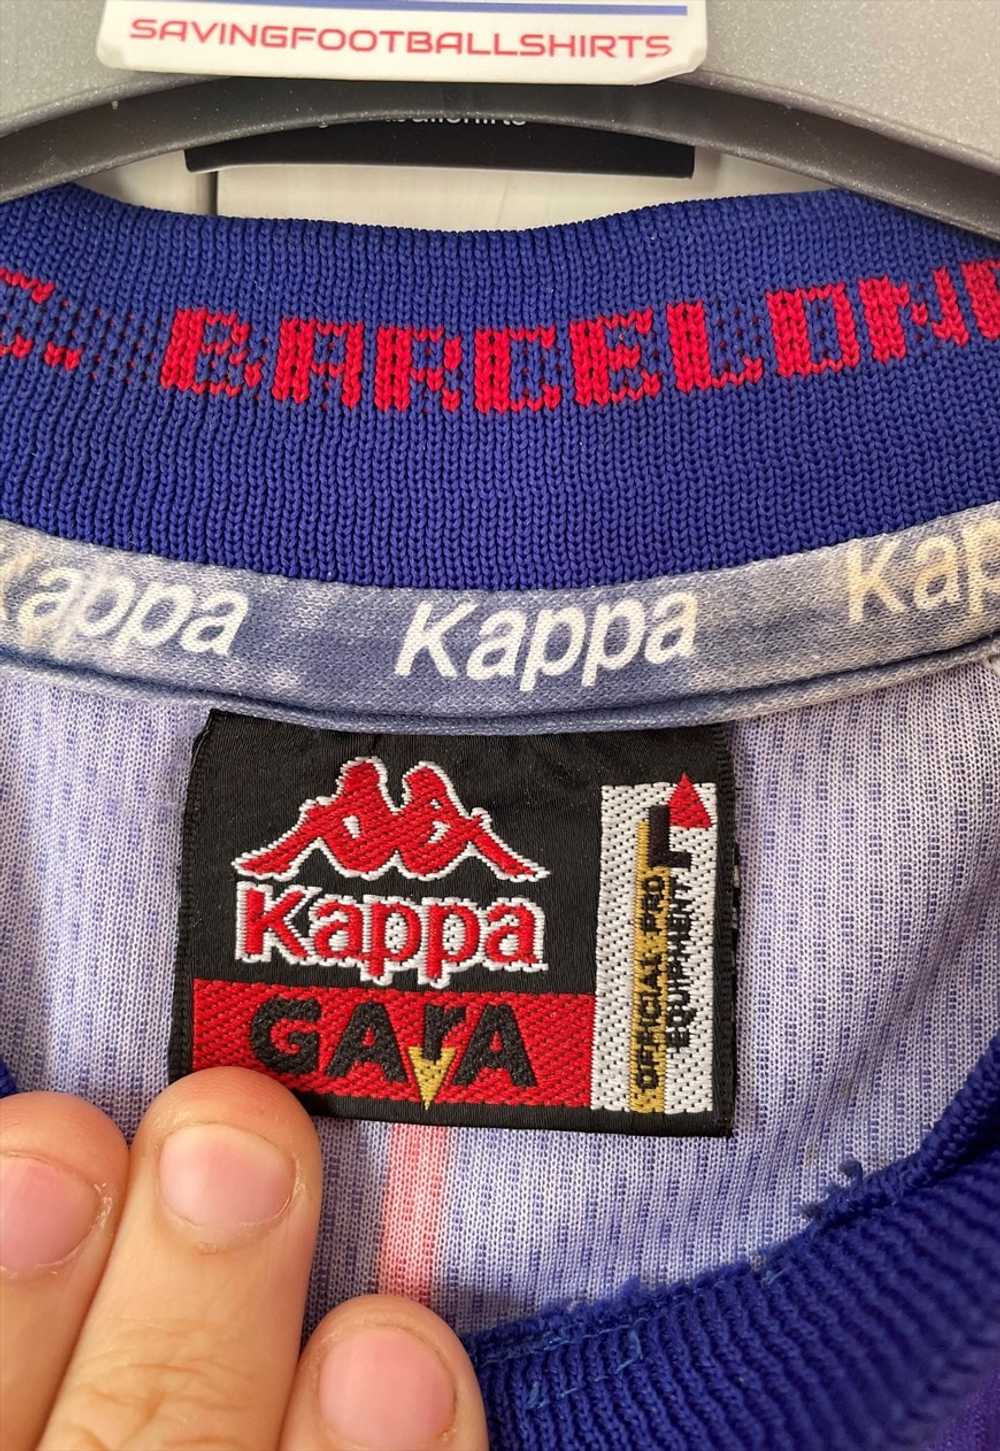 1997-98 Barcelona Home Shirt - image 4